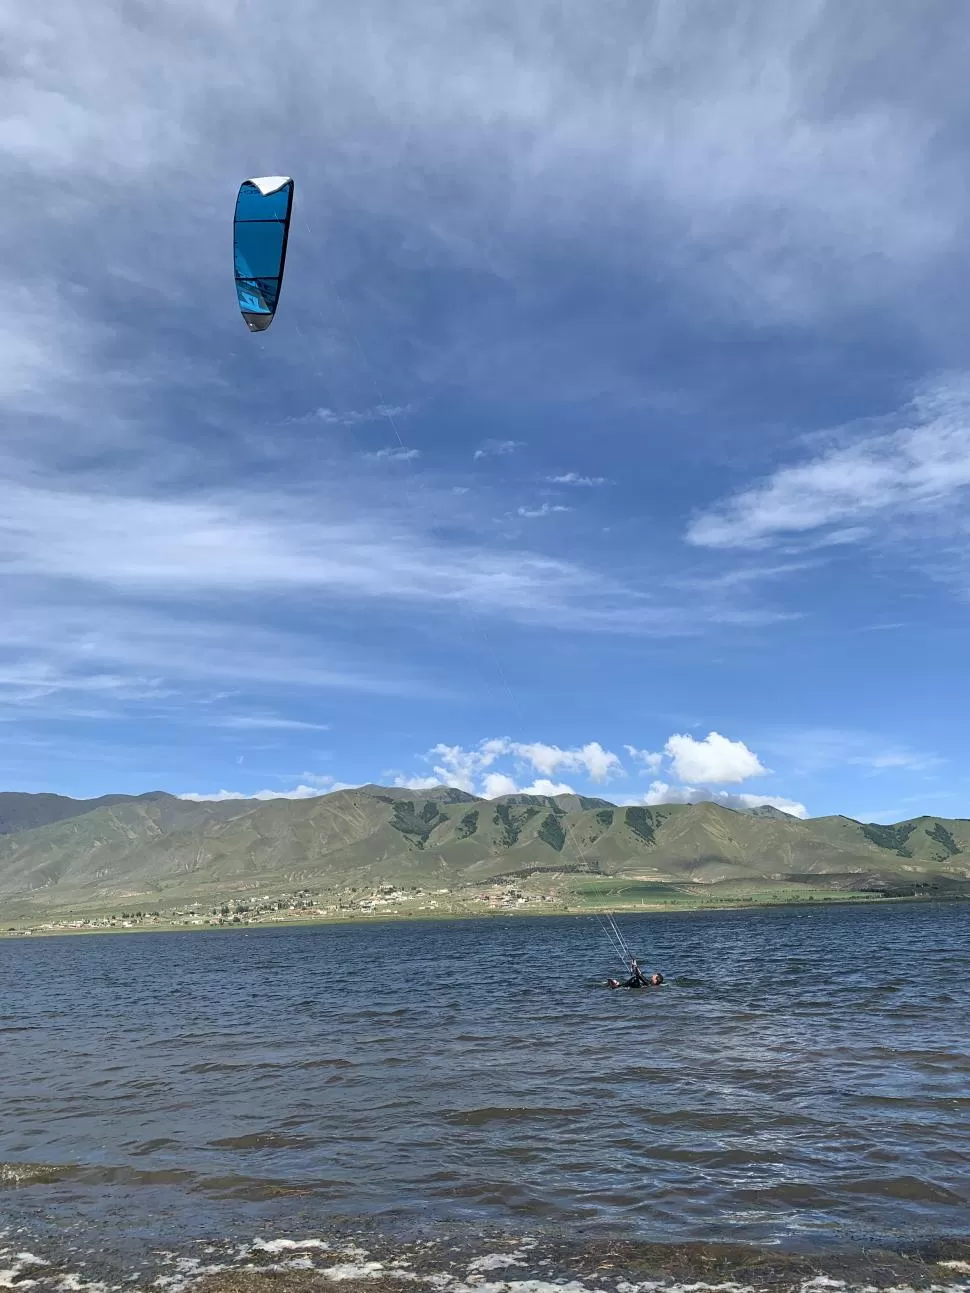 Volar en La Angostura: el kitesurf es un espectáculo a orillas del lago